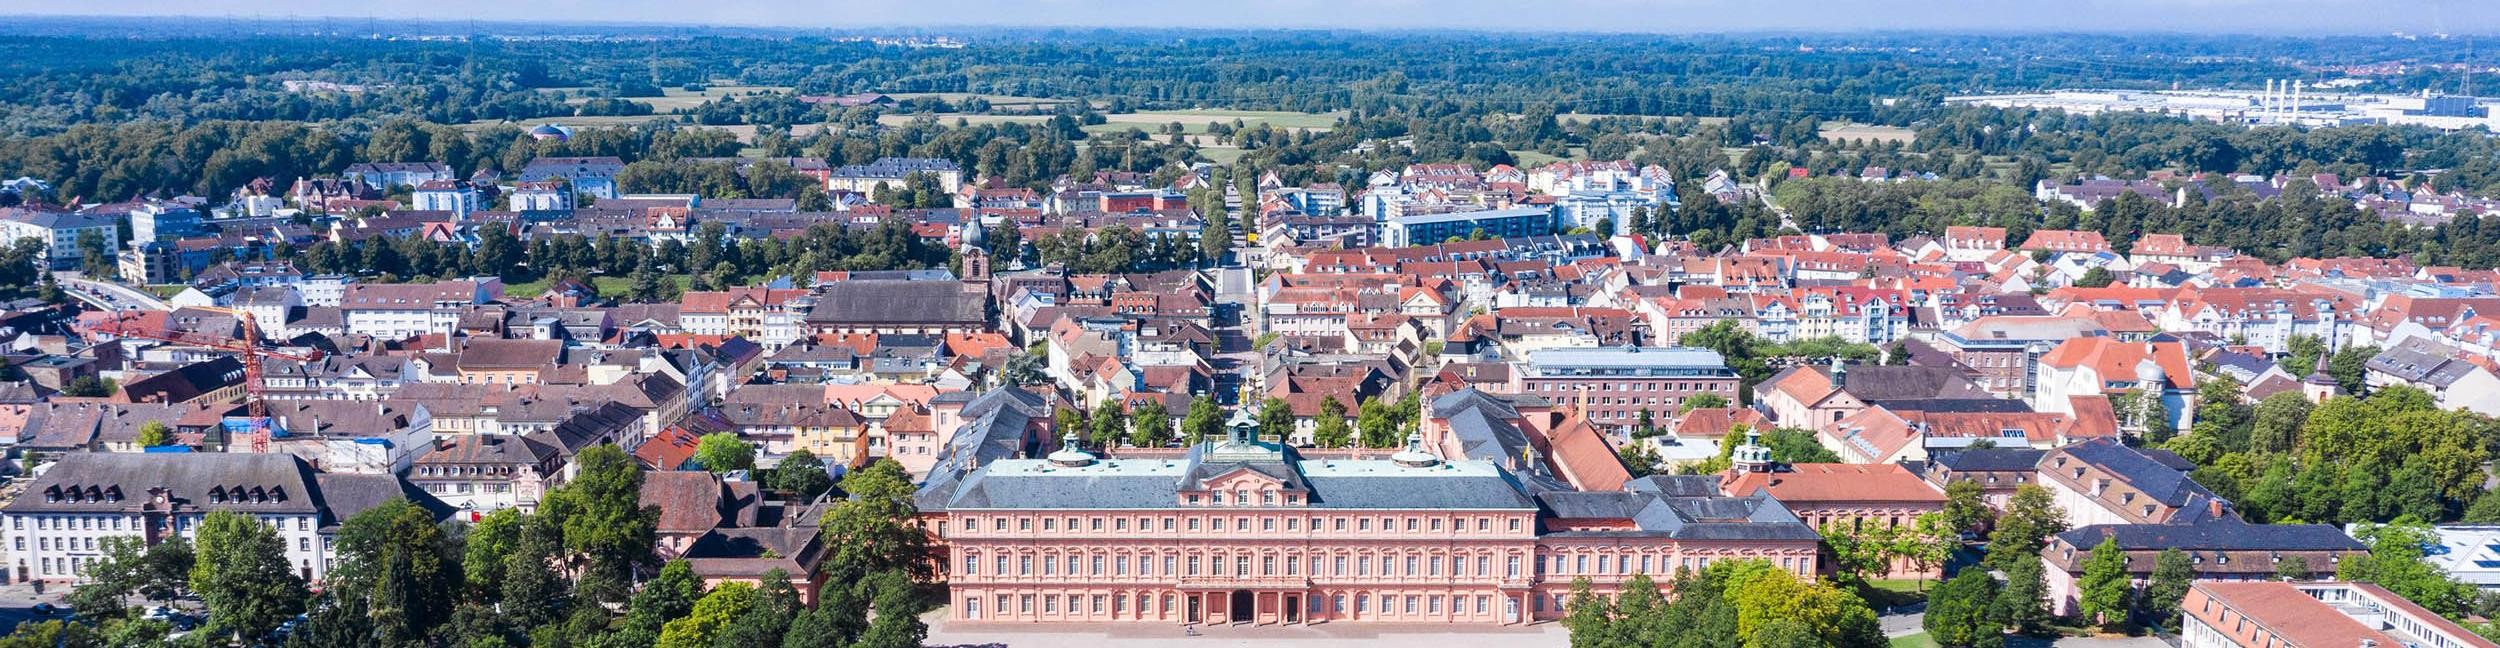 Aerial view Rastatt castle and city center Rastatt